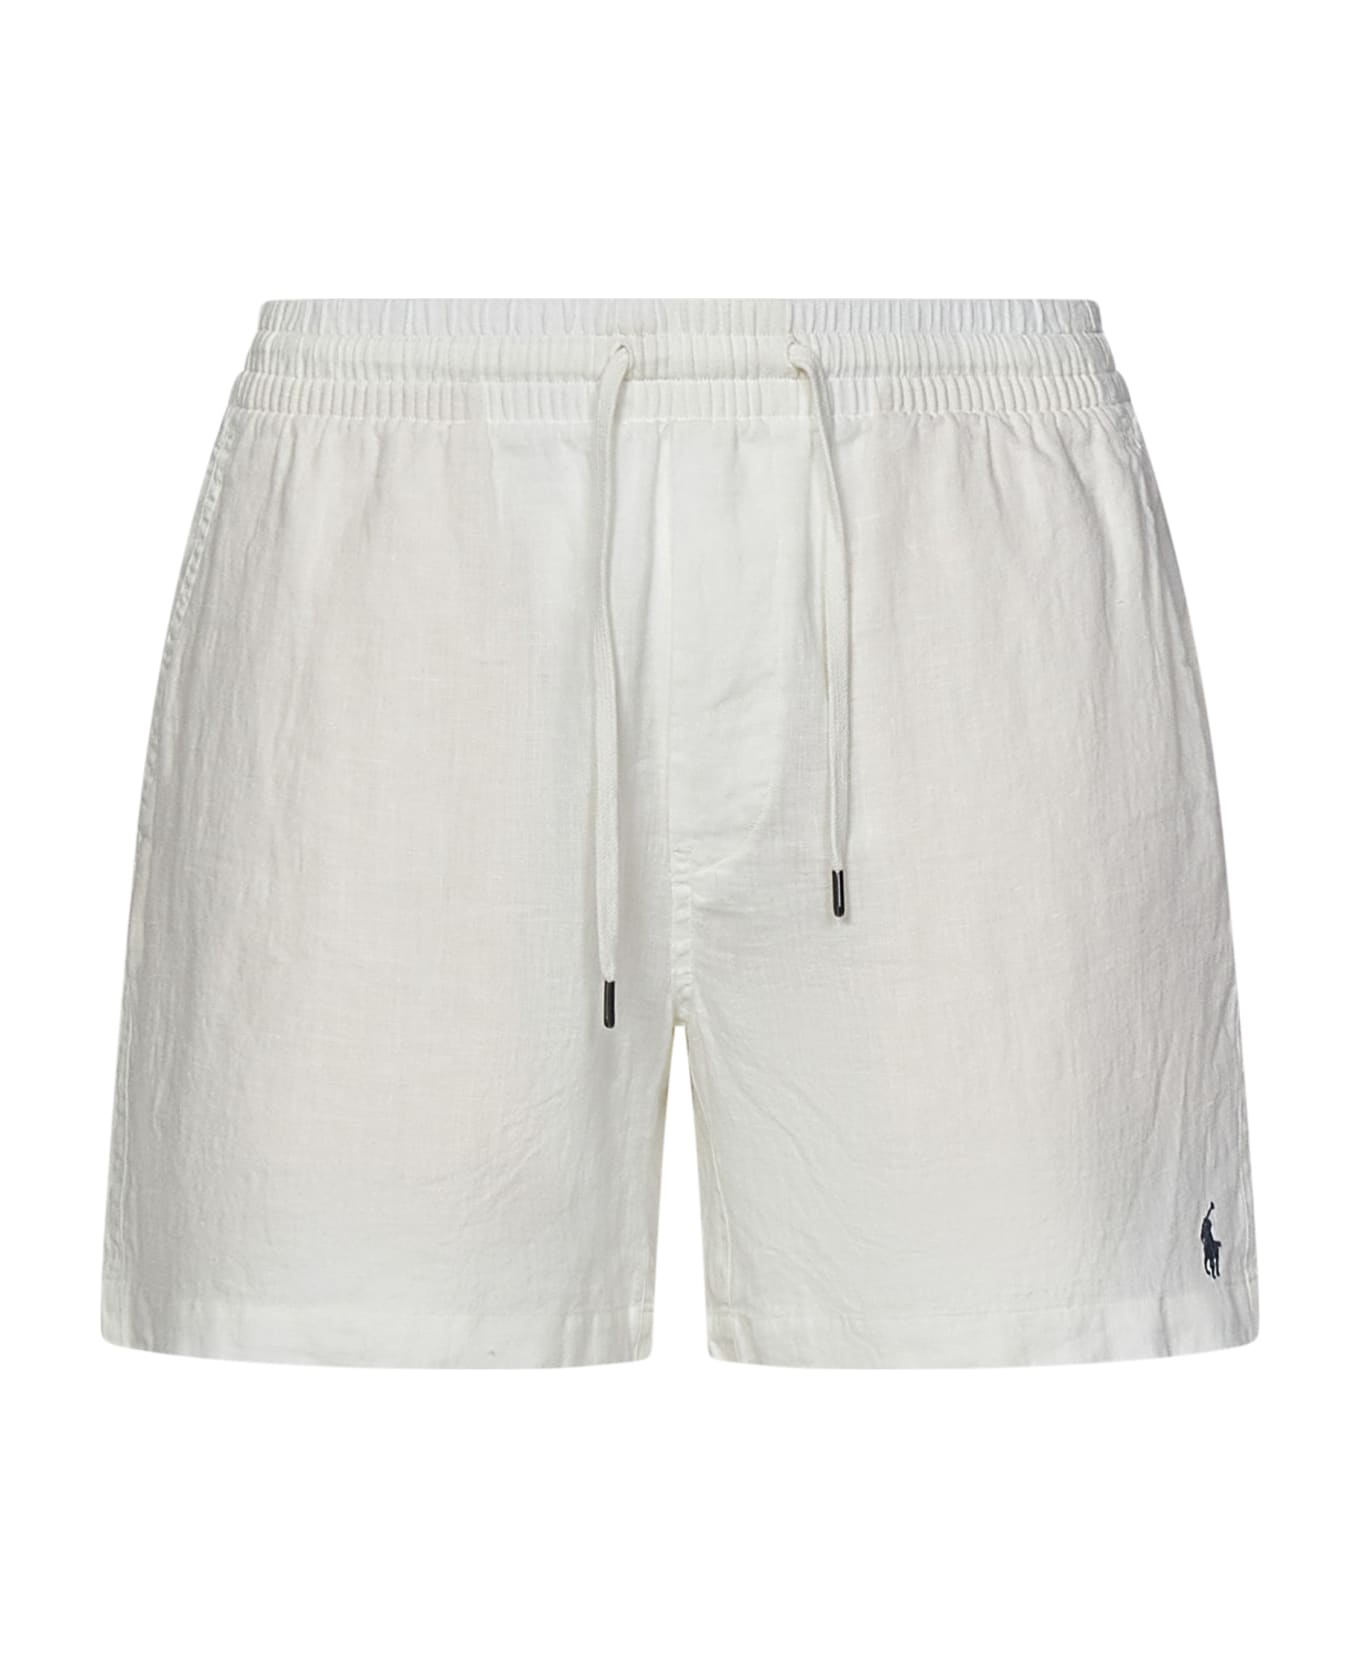 Polo Ralph Lauren Prepster Shorts - White ショートパンツ